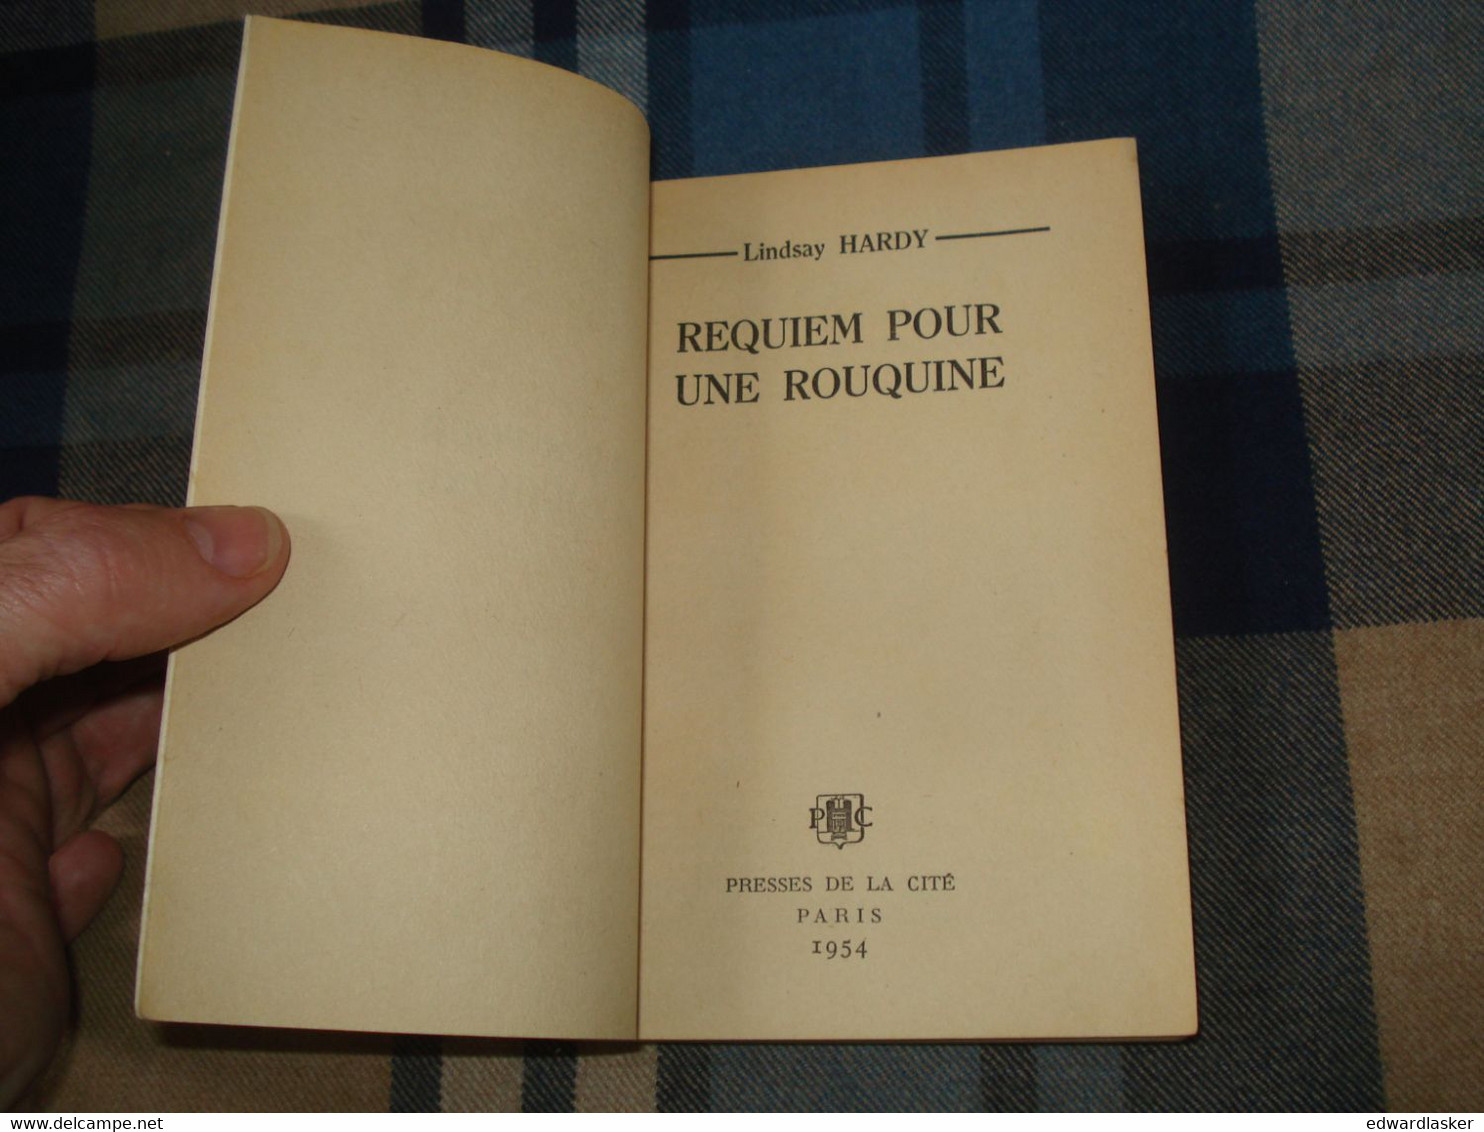 Un MYSTERE N°187 : REQUIEM Pour Une ROUQUINE /Lindsay Hardy - Octobre 1954 - Presses De La Cité